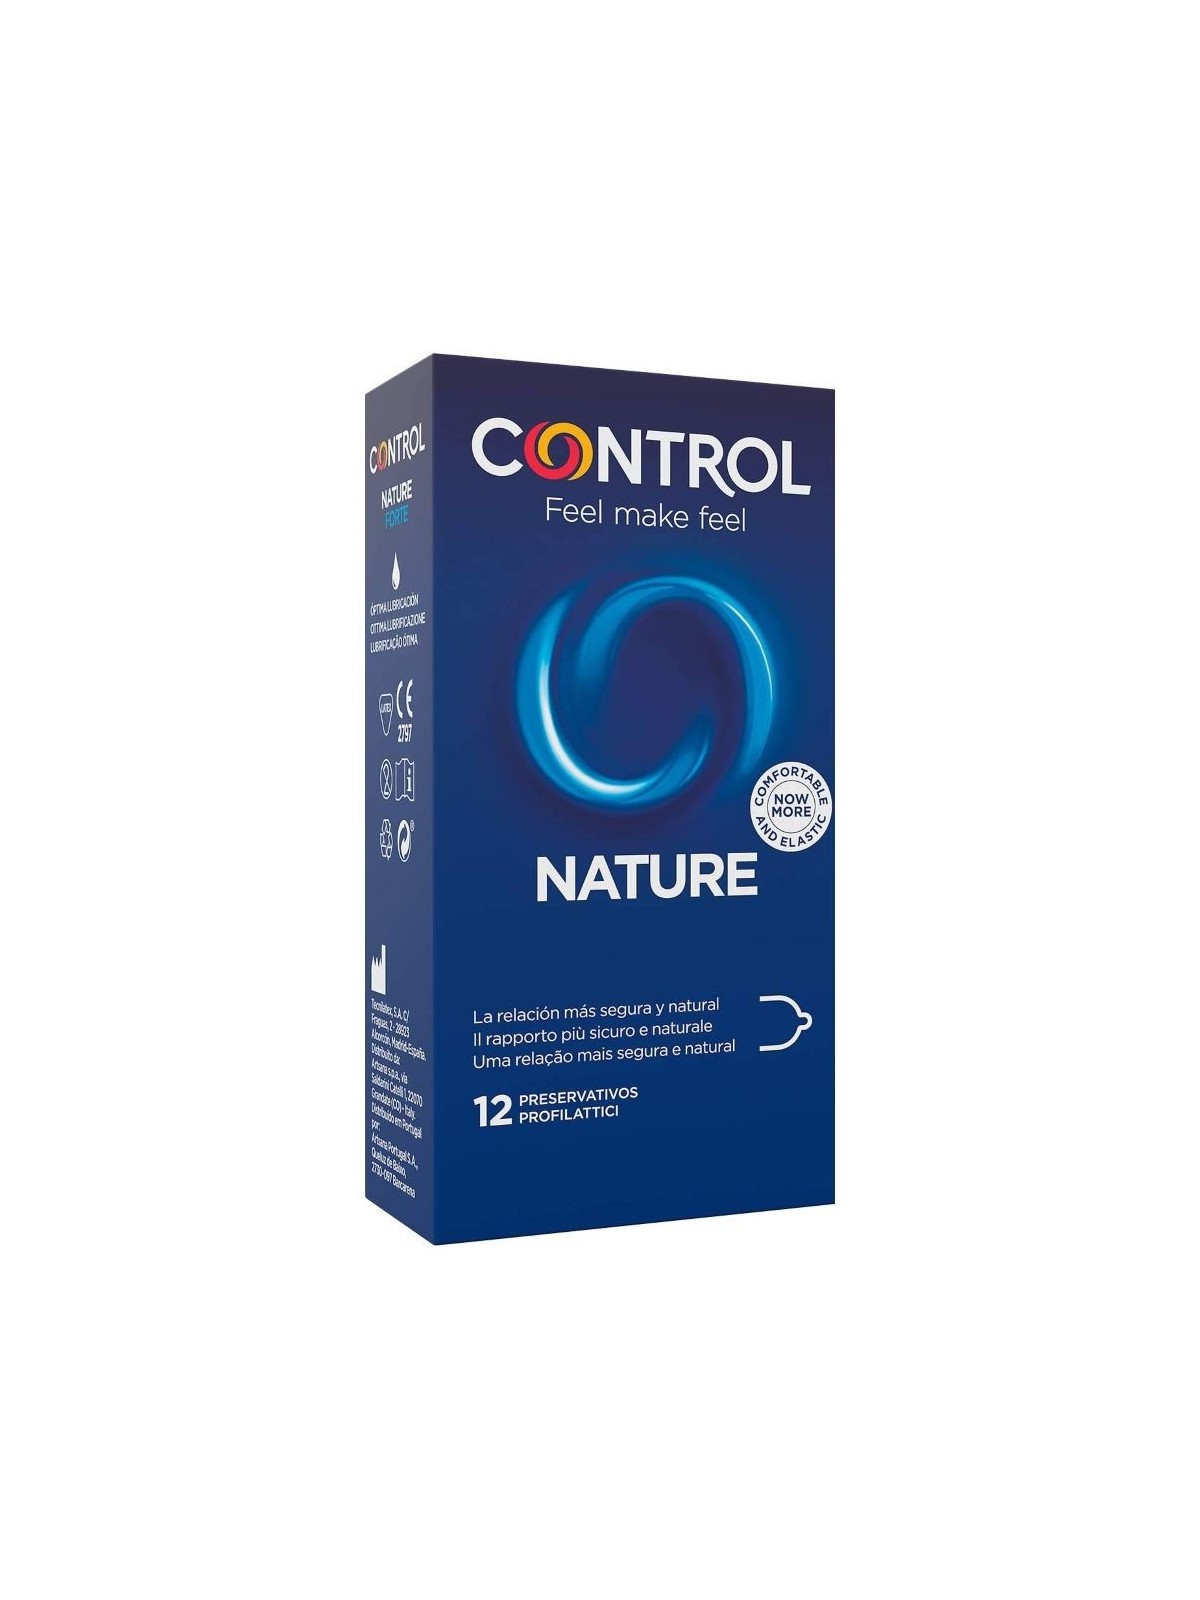 Control Adapta Nature - Comprar Condones naturales Control - Preservativos naturales (2)